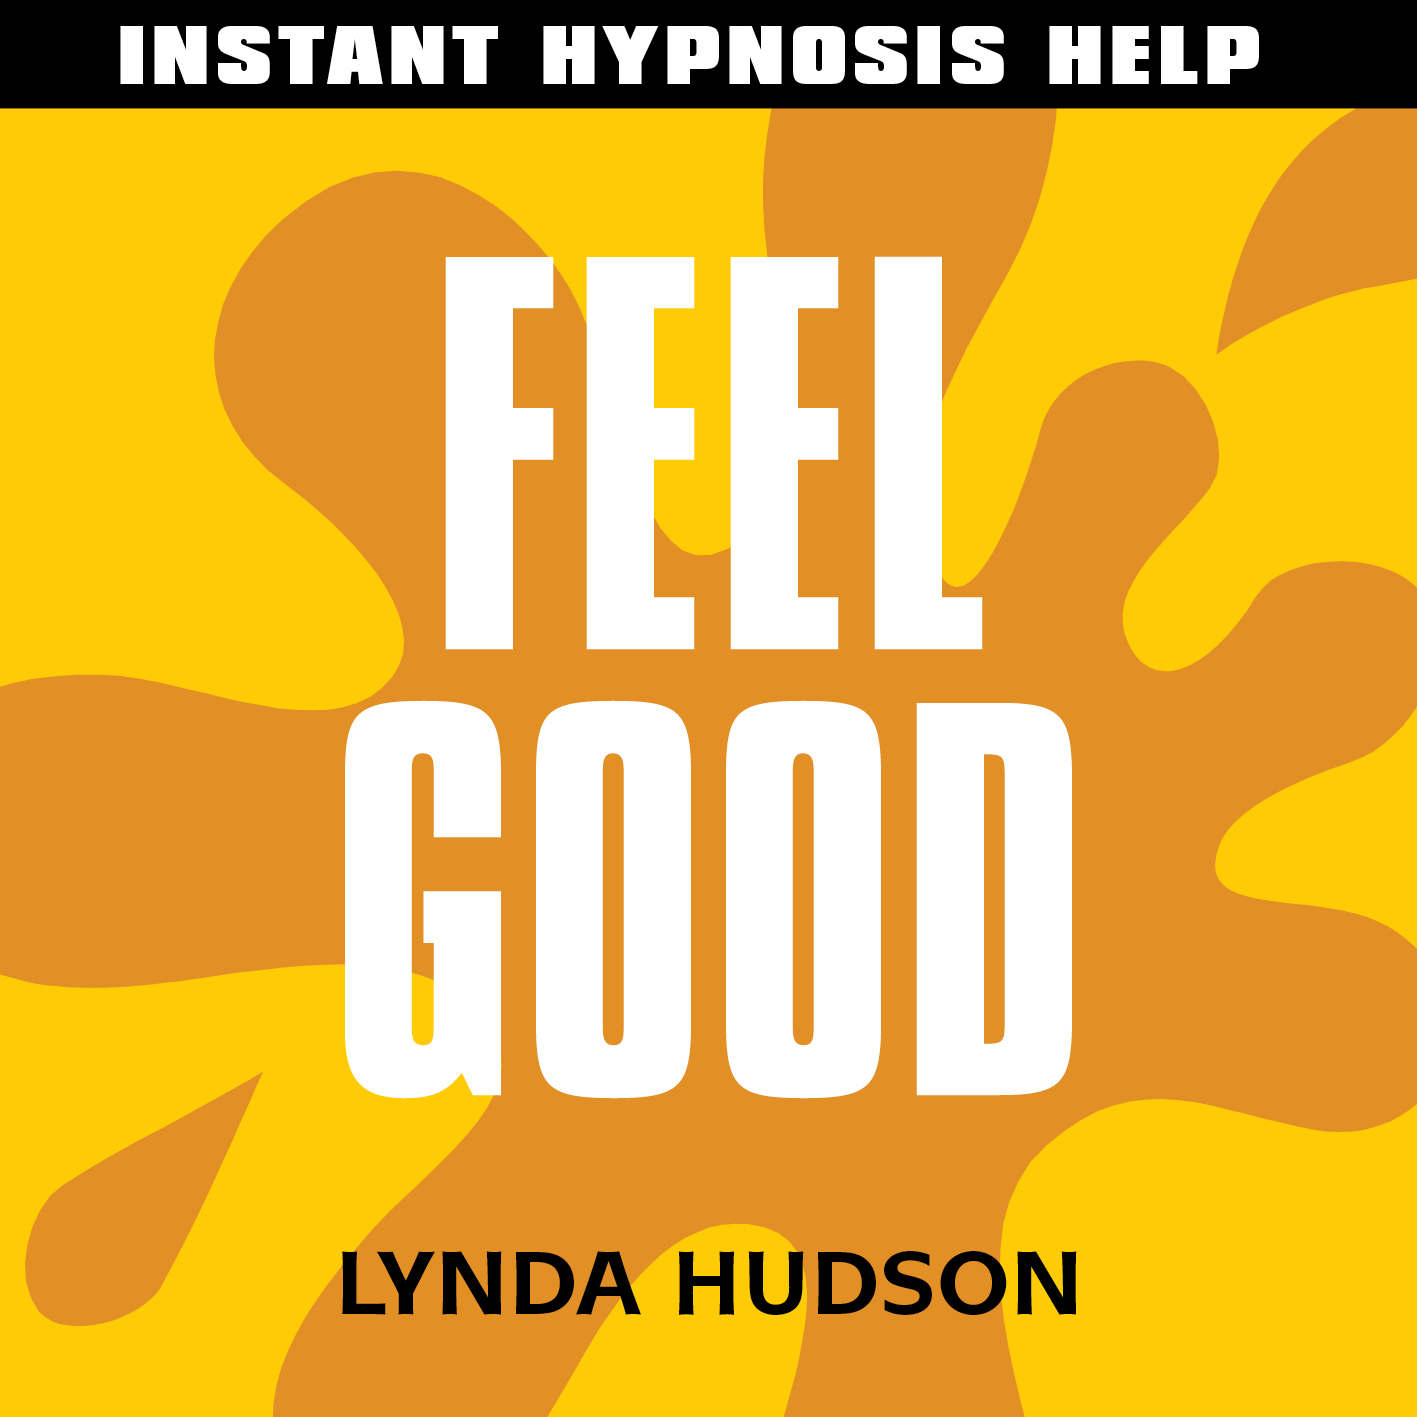 Feeling сайт. Lynda Hudson. Lynda Hudson психолог. Learning instant Hypnosis Power. Learning instant Hypnosis Power money Love.